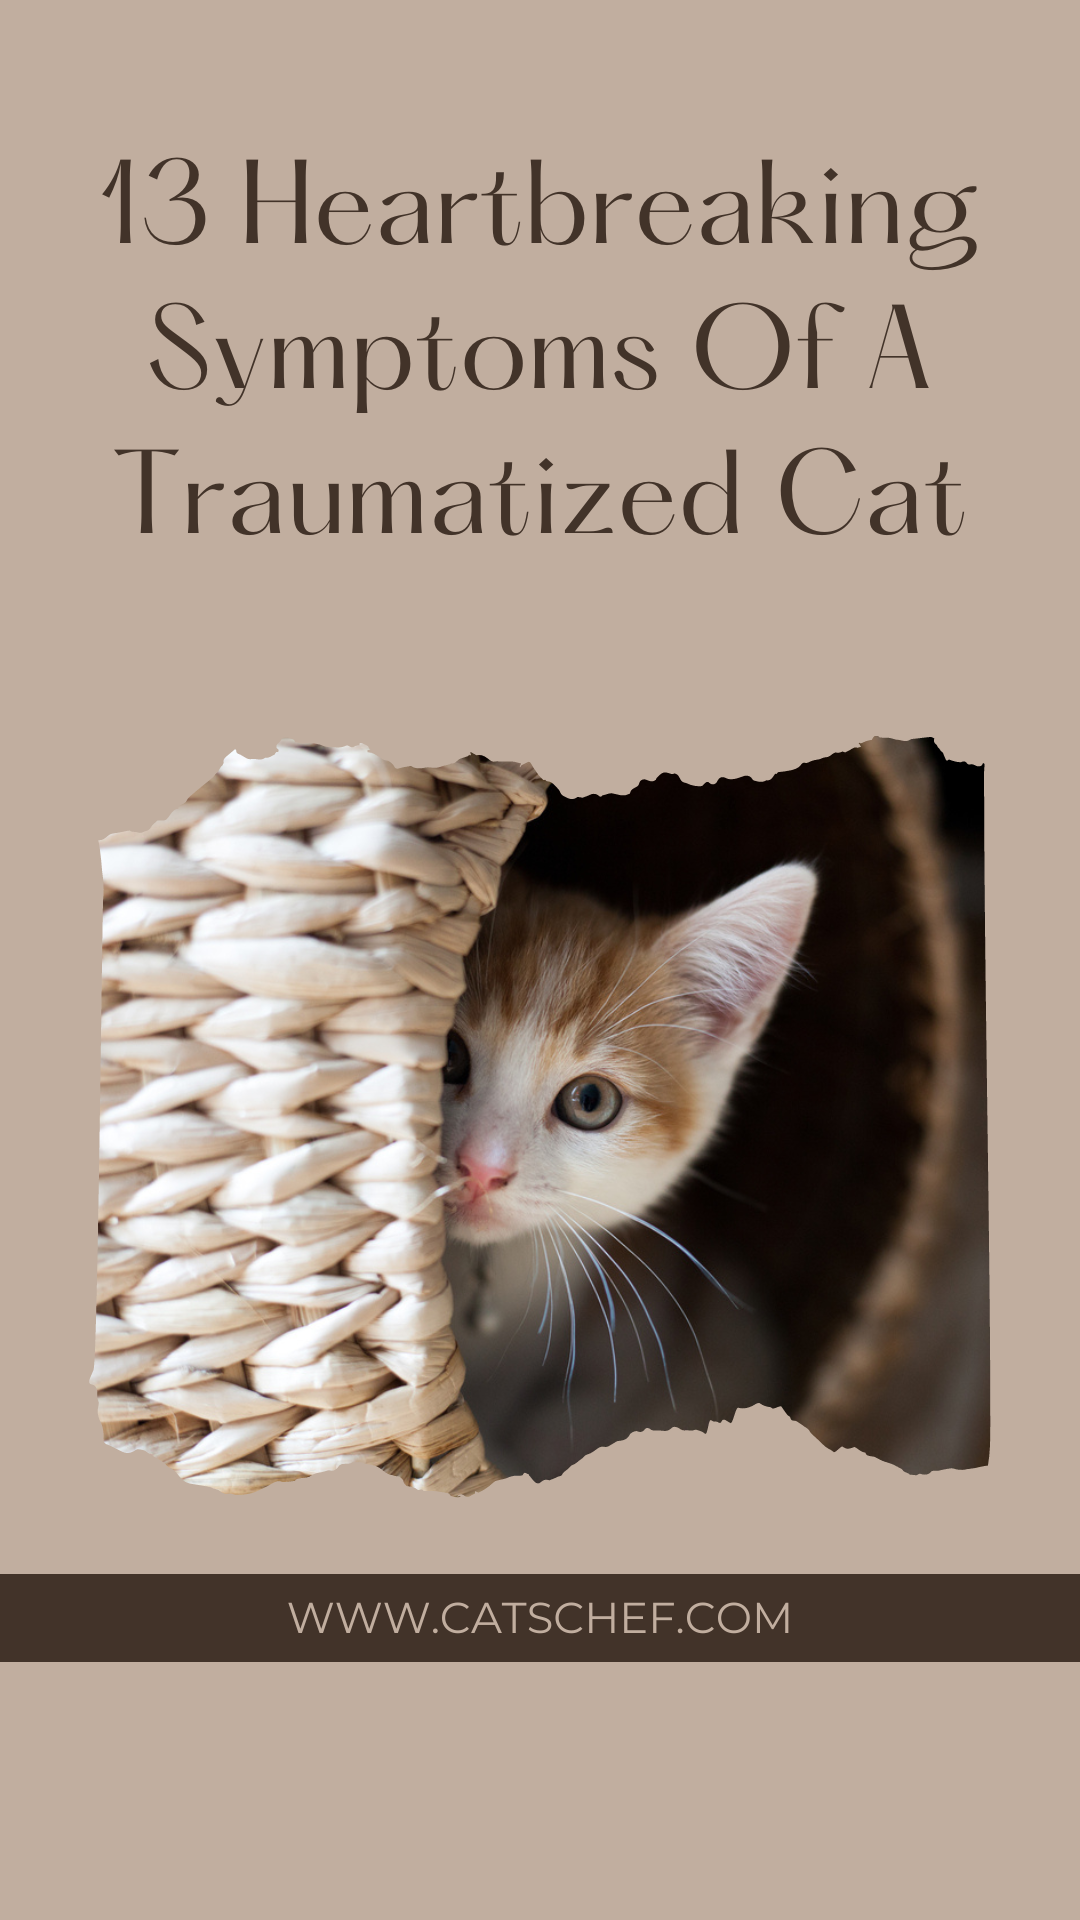 13 Heartbreaking Symptoms Of A Traumatized Cat